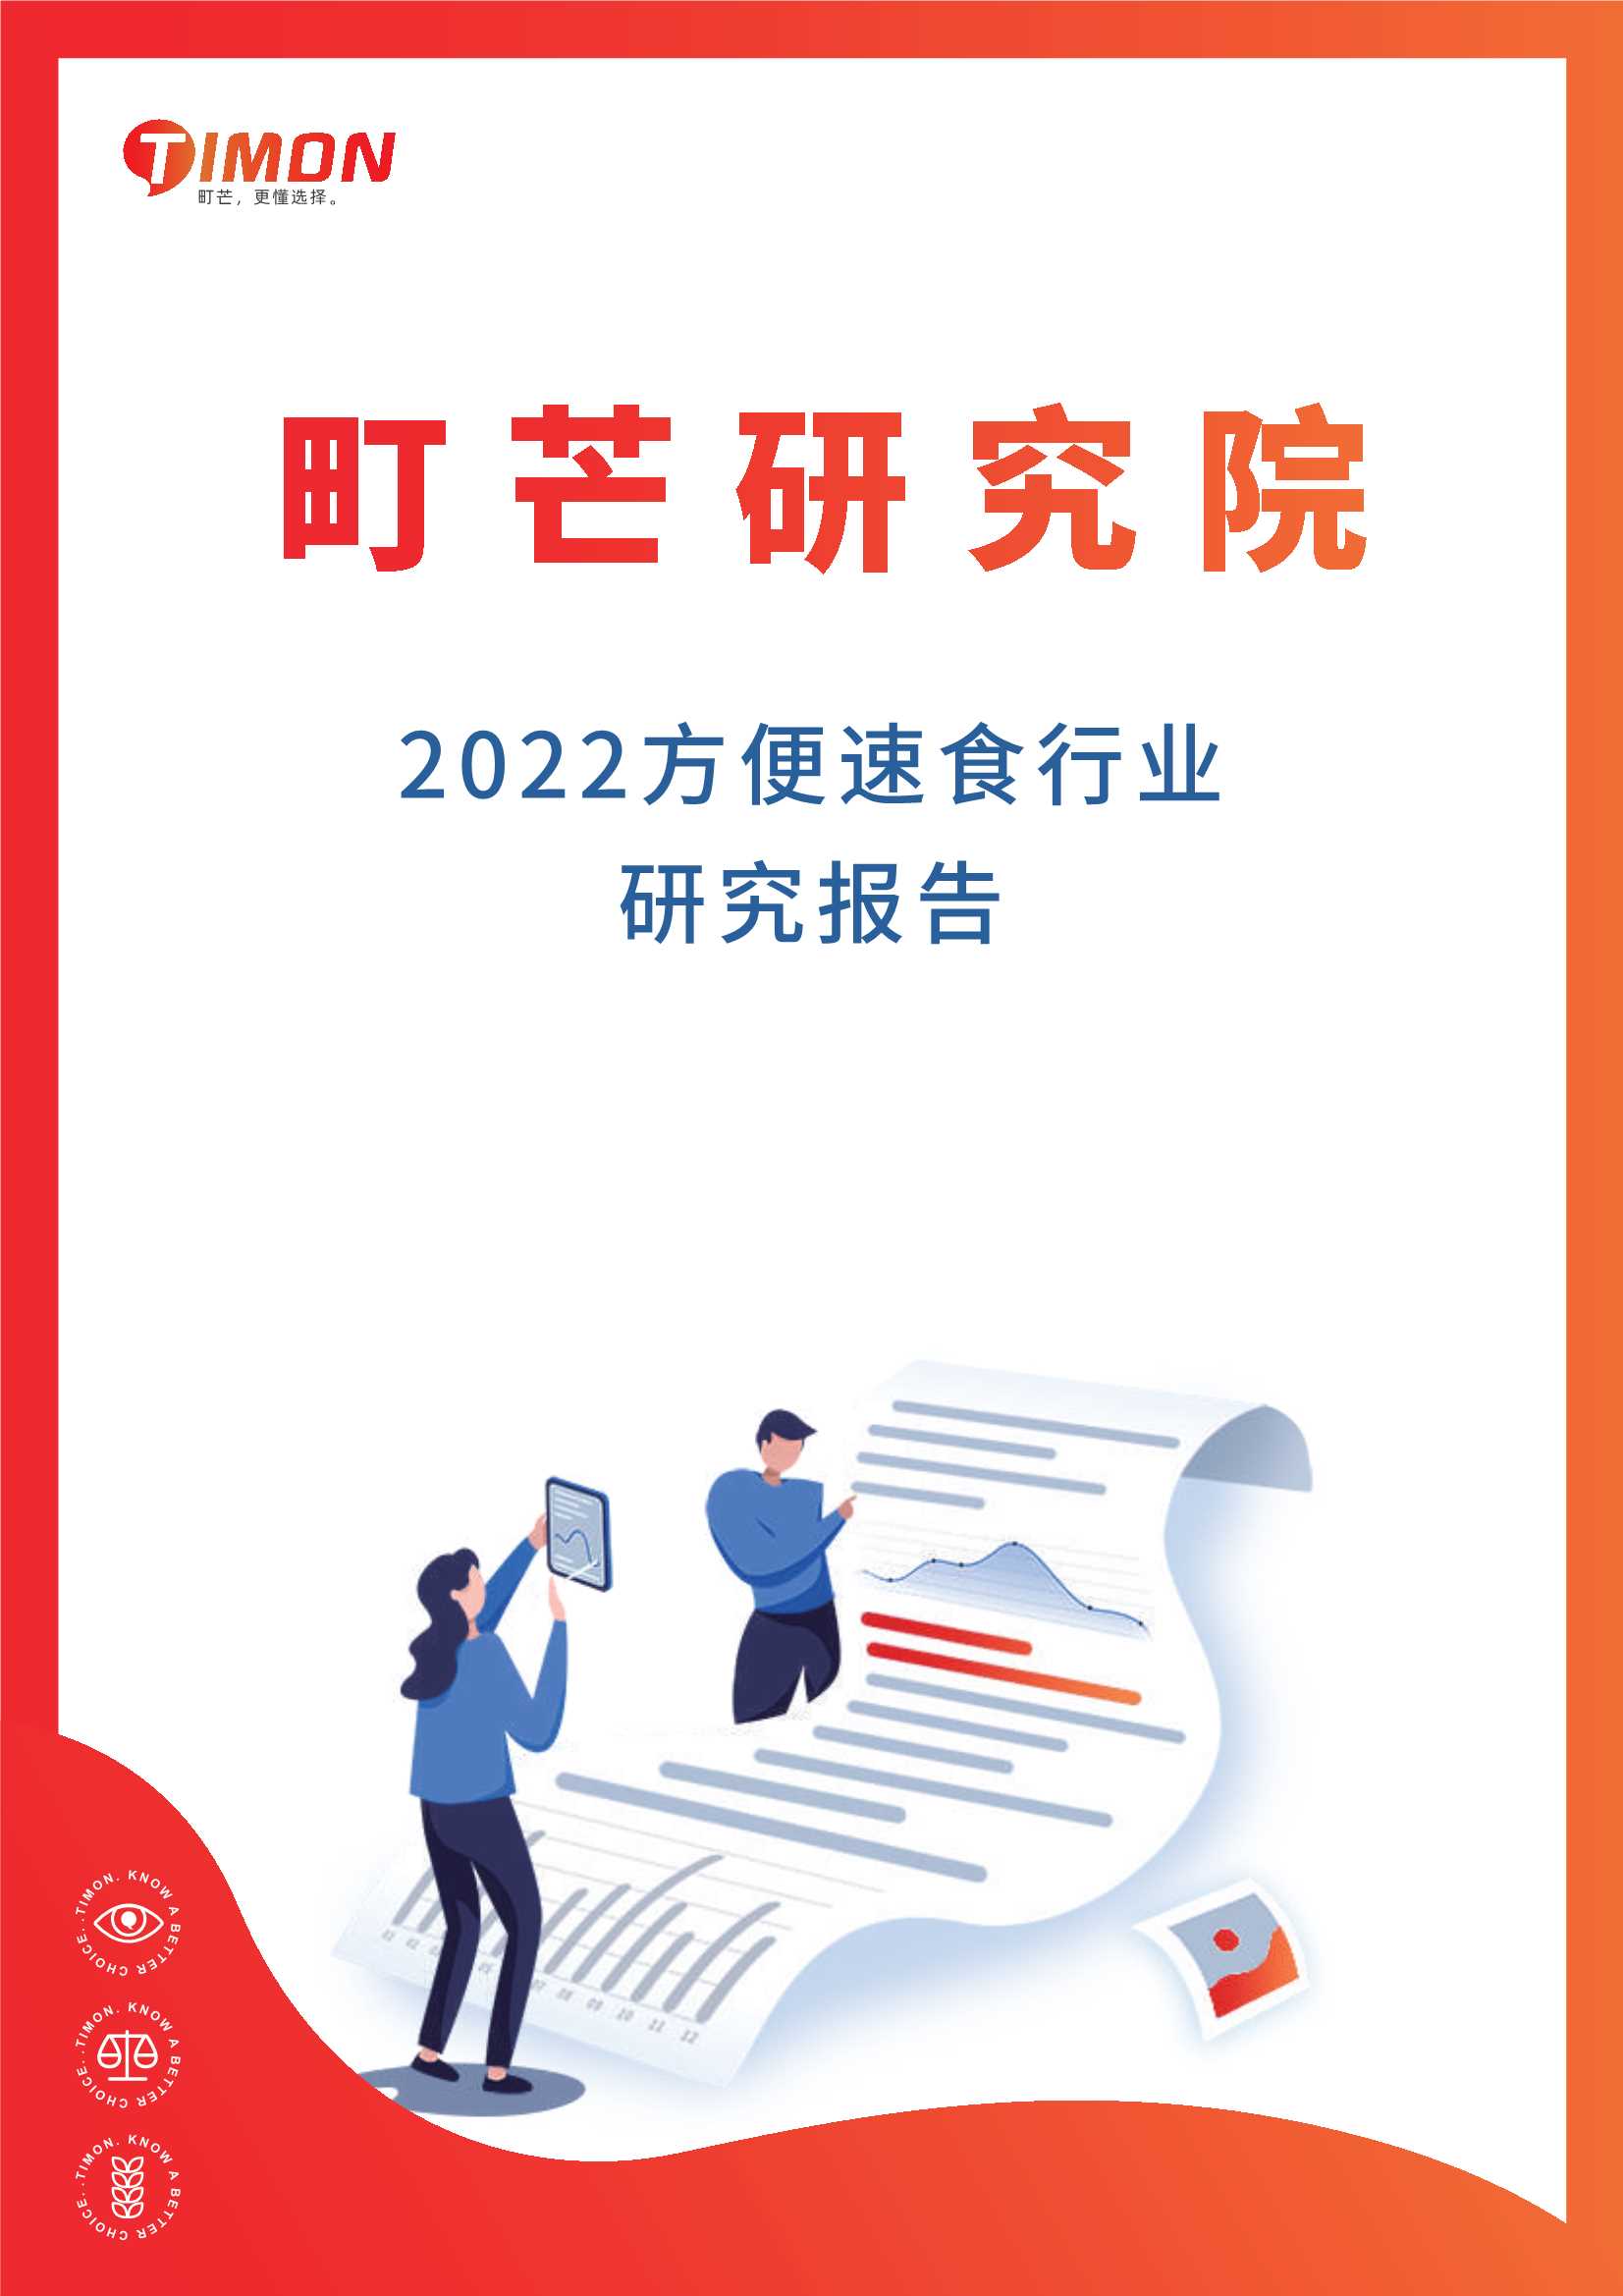 町芒研究院-2022方便速食行业研究报告-2022.04-42页